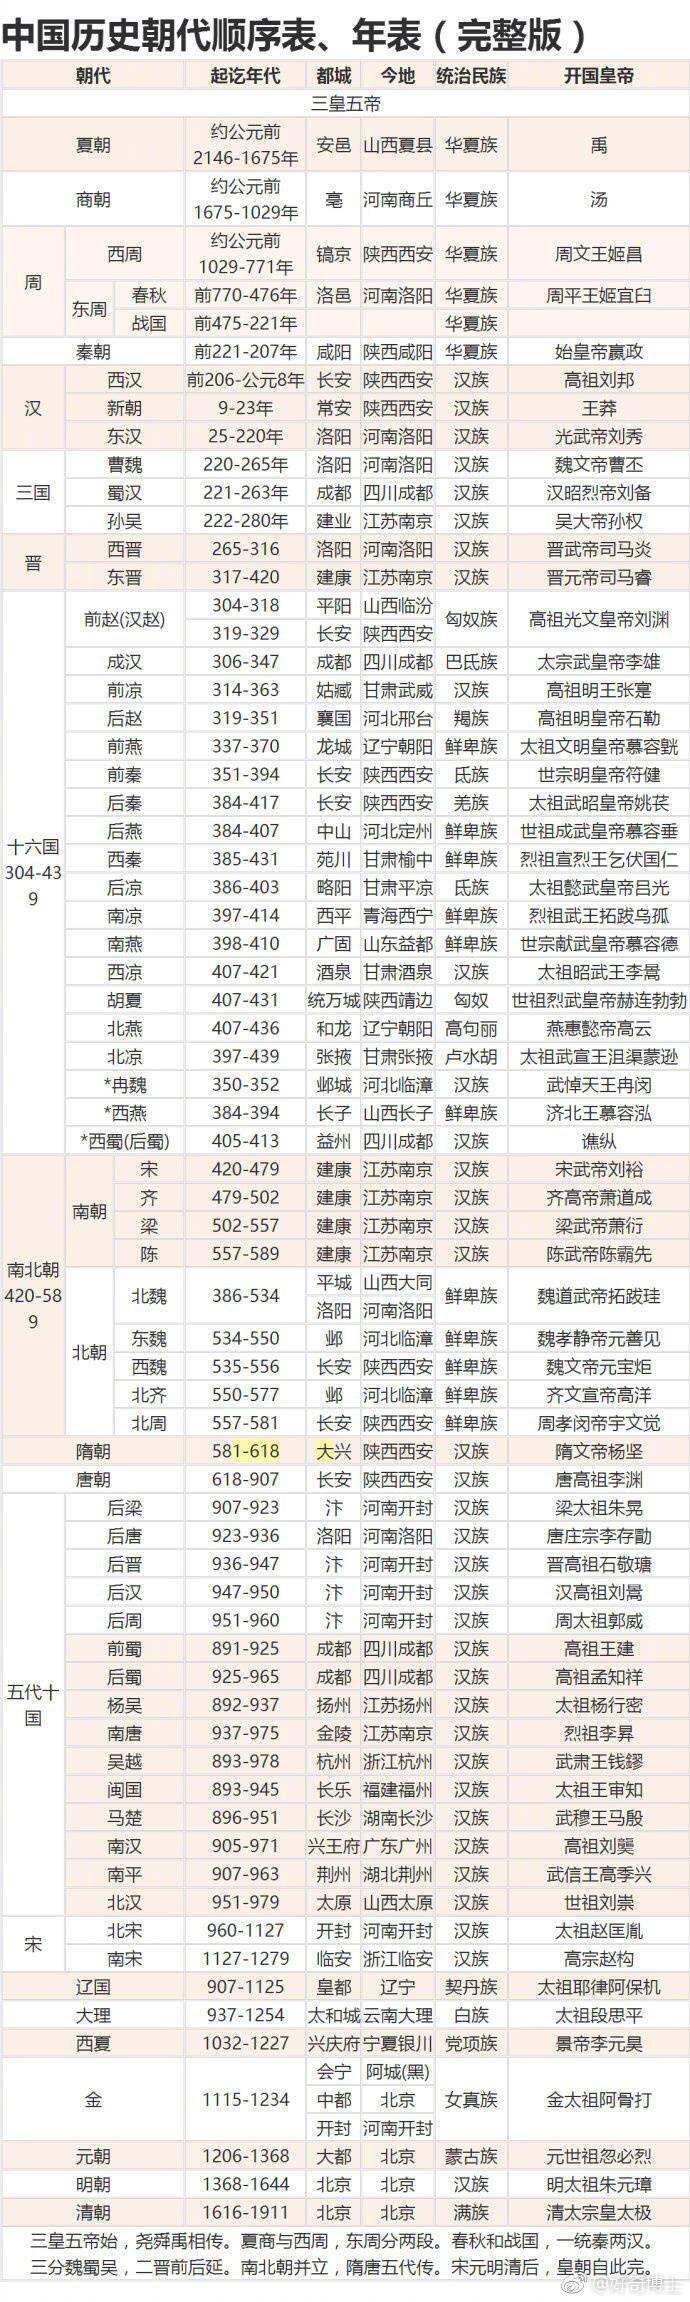 转自:嘻嘻回来啦4月5日 12:23 中国历史朝代顺序表完整版,码了涨姿势